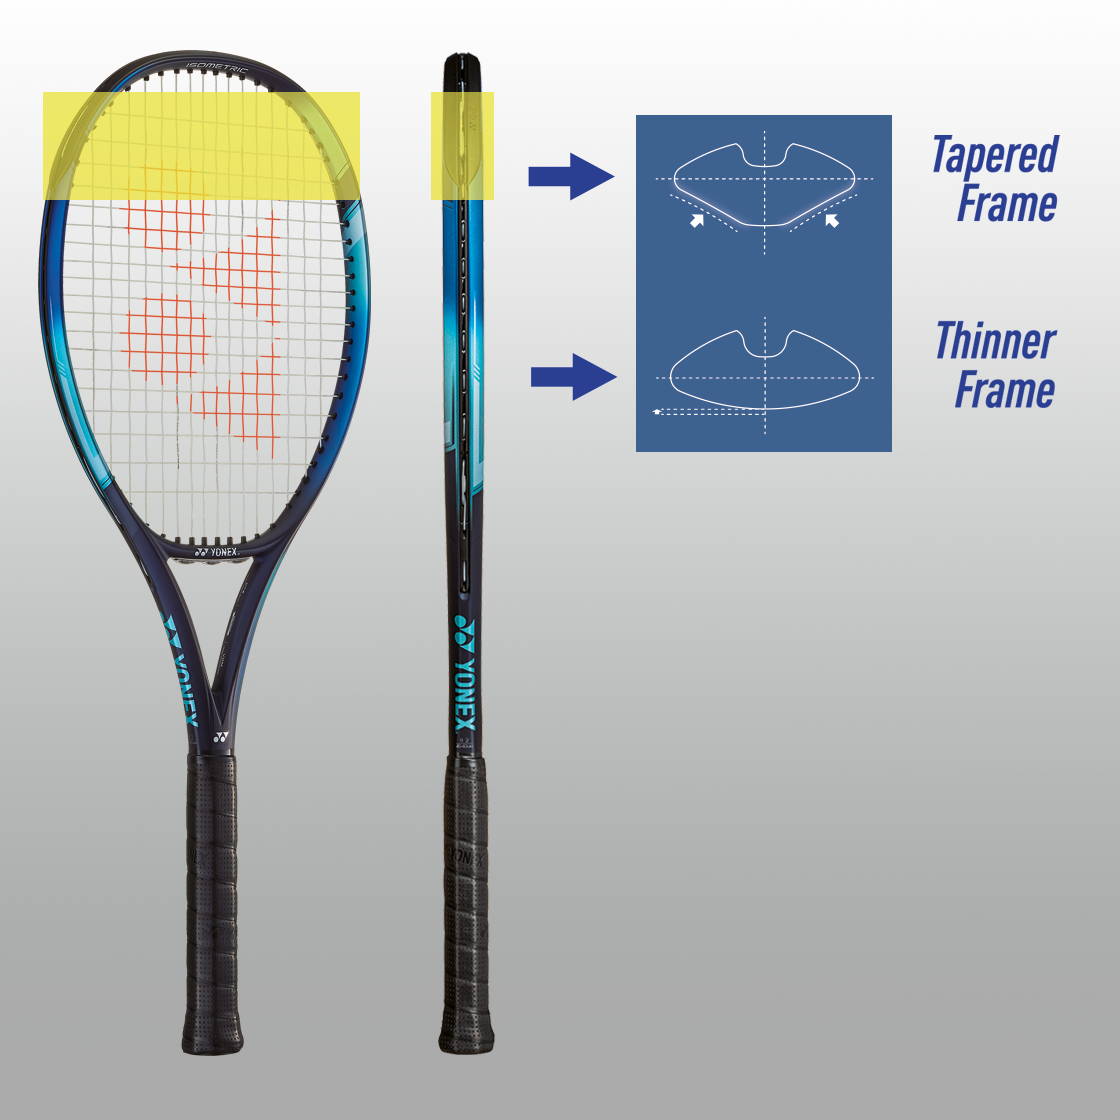 L3 Yonex Ezone 100 Tennis Racquet 300g 4 3/8 Inches Unstrung 